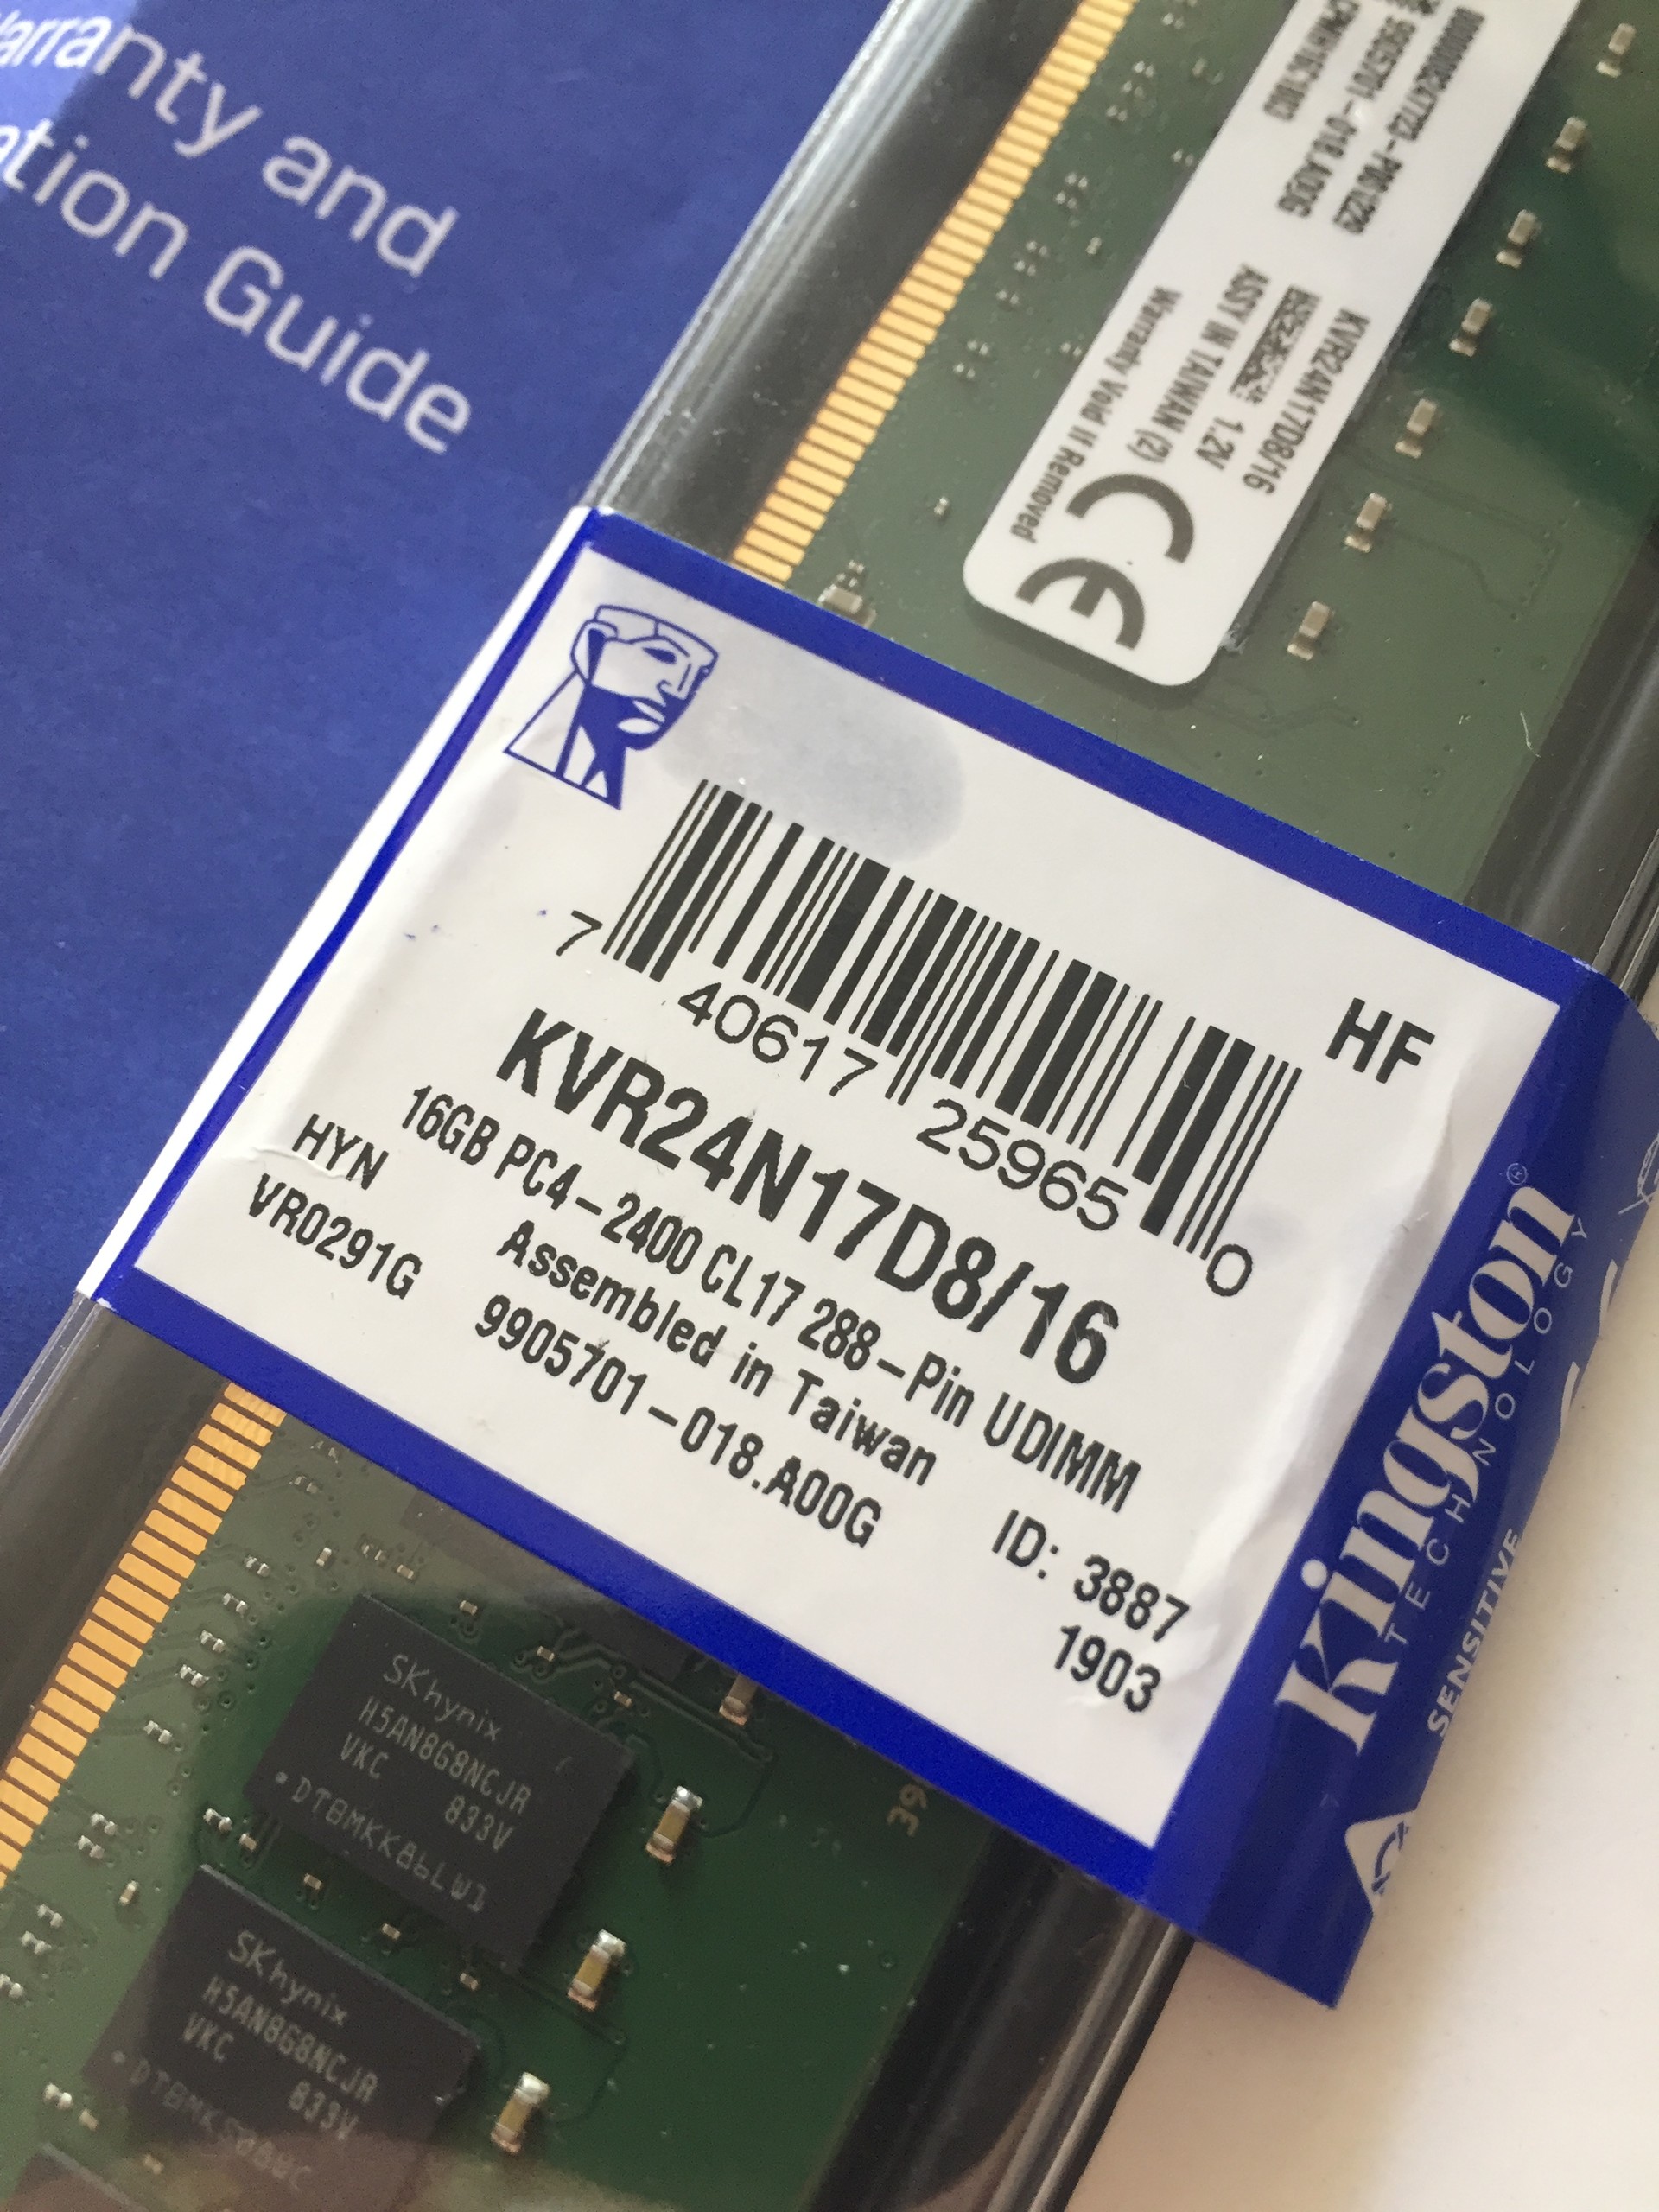 [SATILDI] Kingston DDR4 16GB 2400MHz Ram 449₺